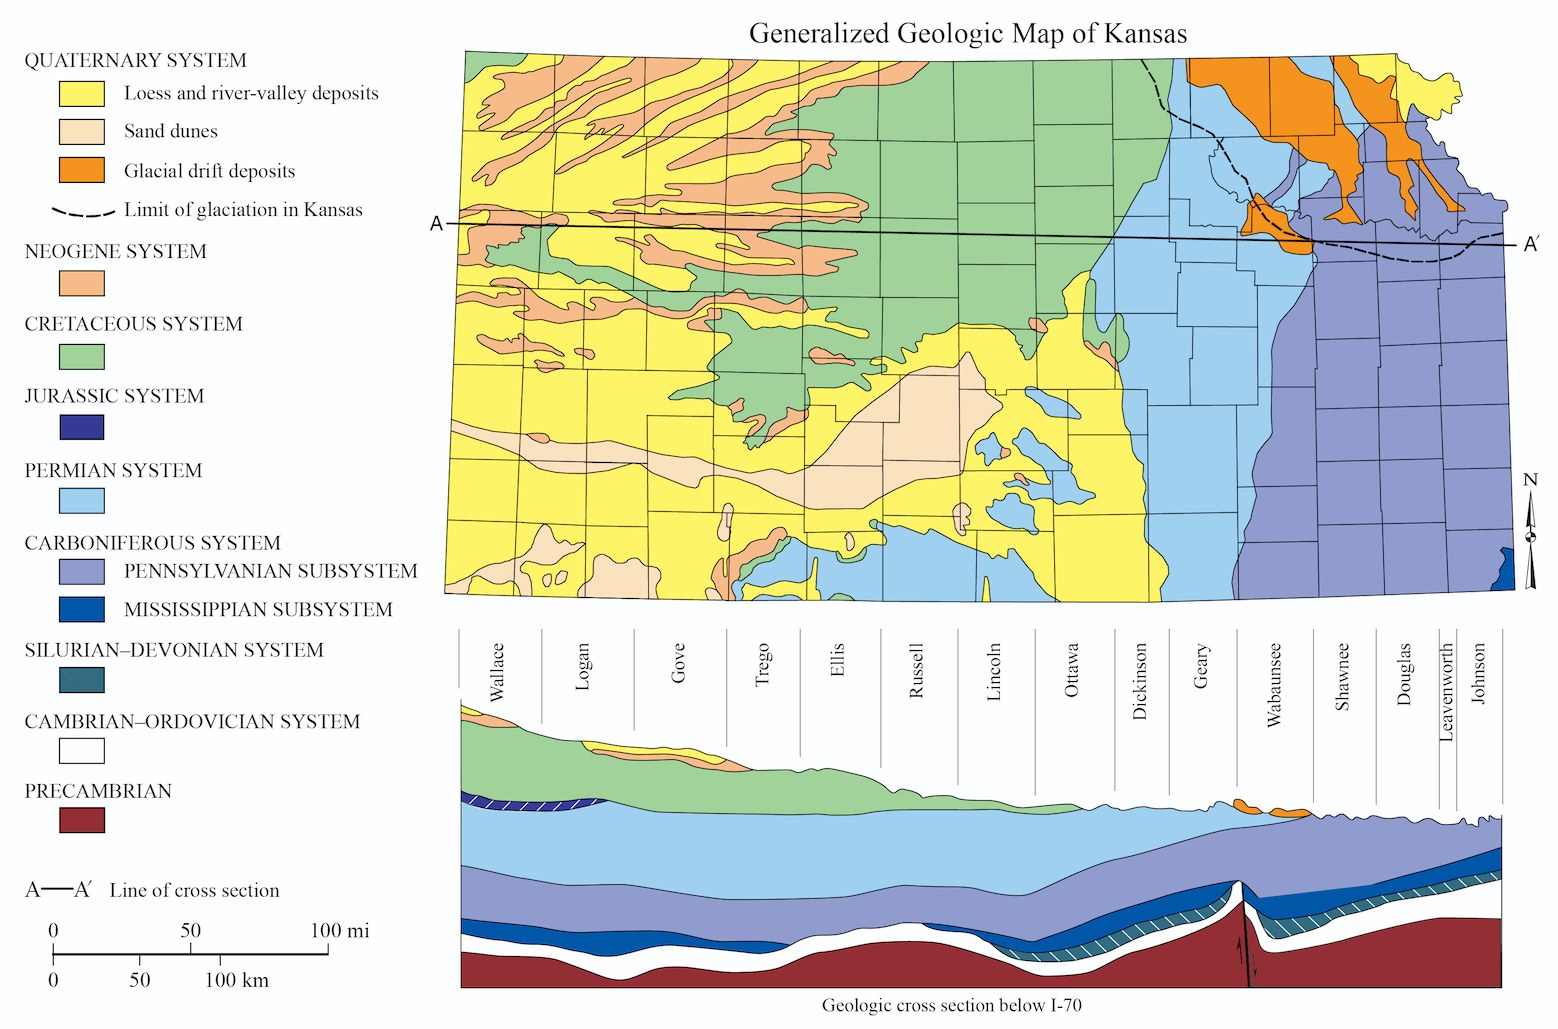 Generalized geologic map of Kansas.